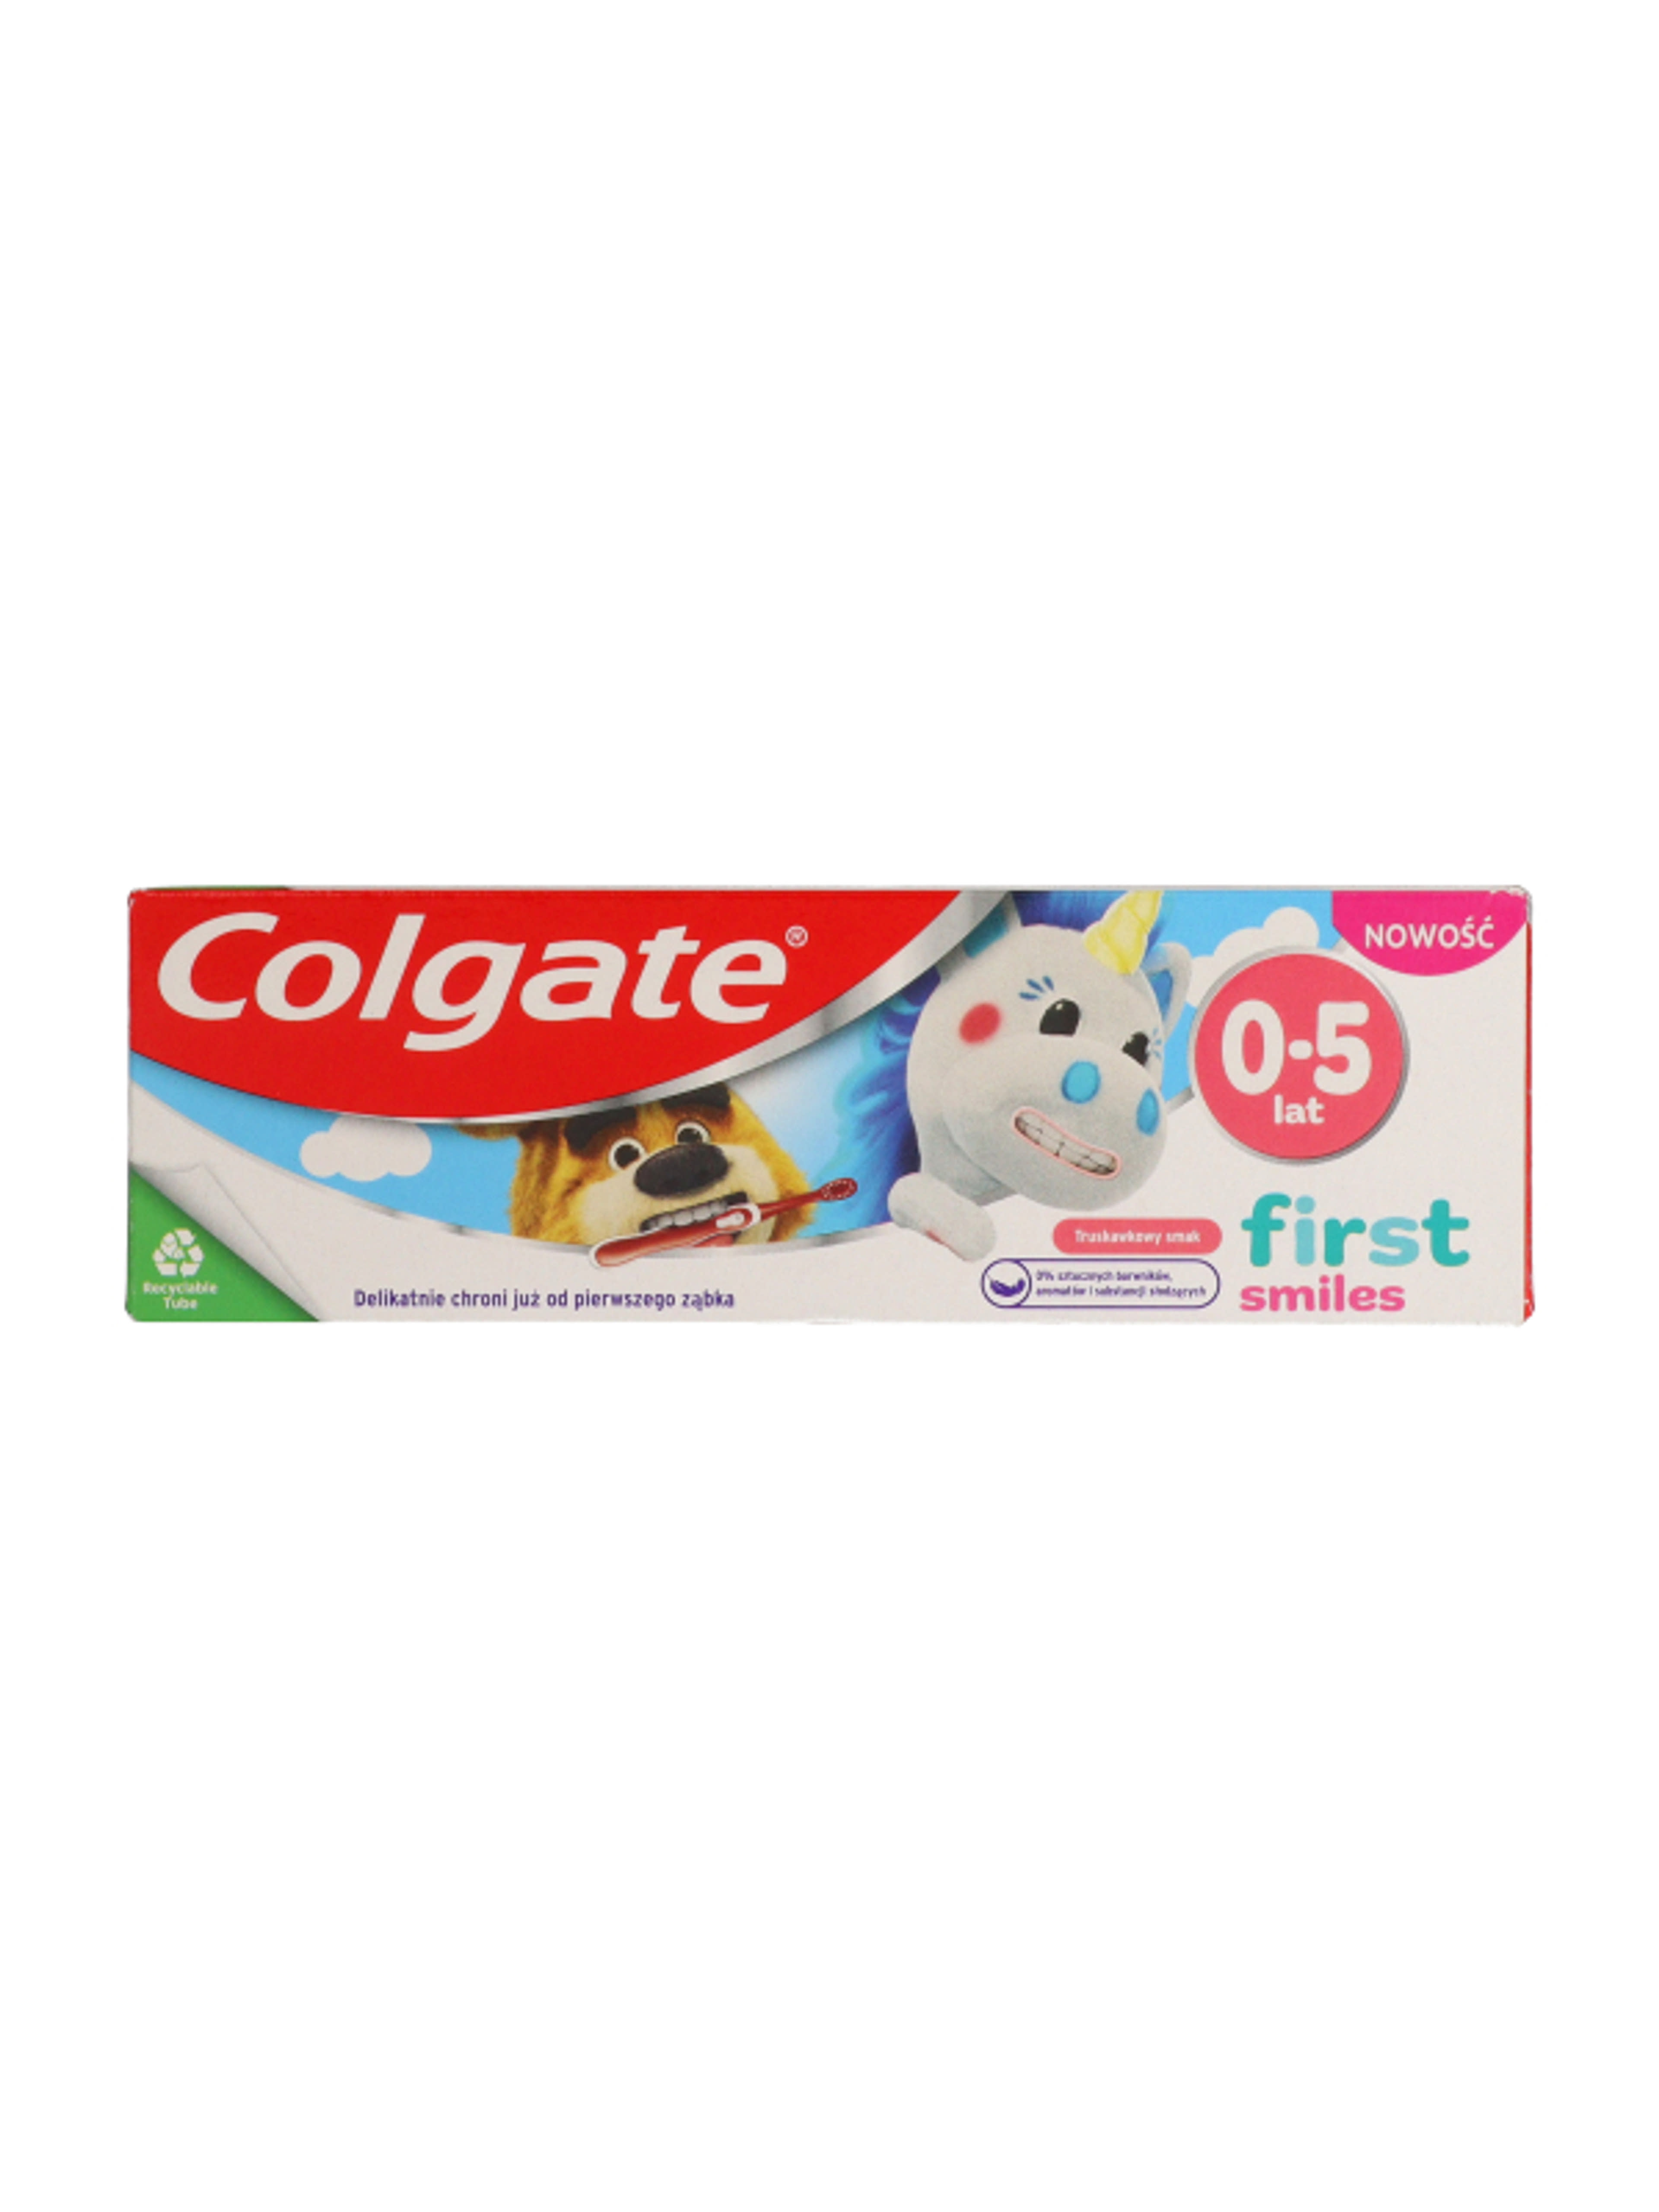 Colgate First Smiles fogkrém gyermekeknek 0-5 éves korig - 50 ml-11